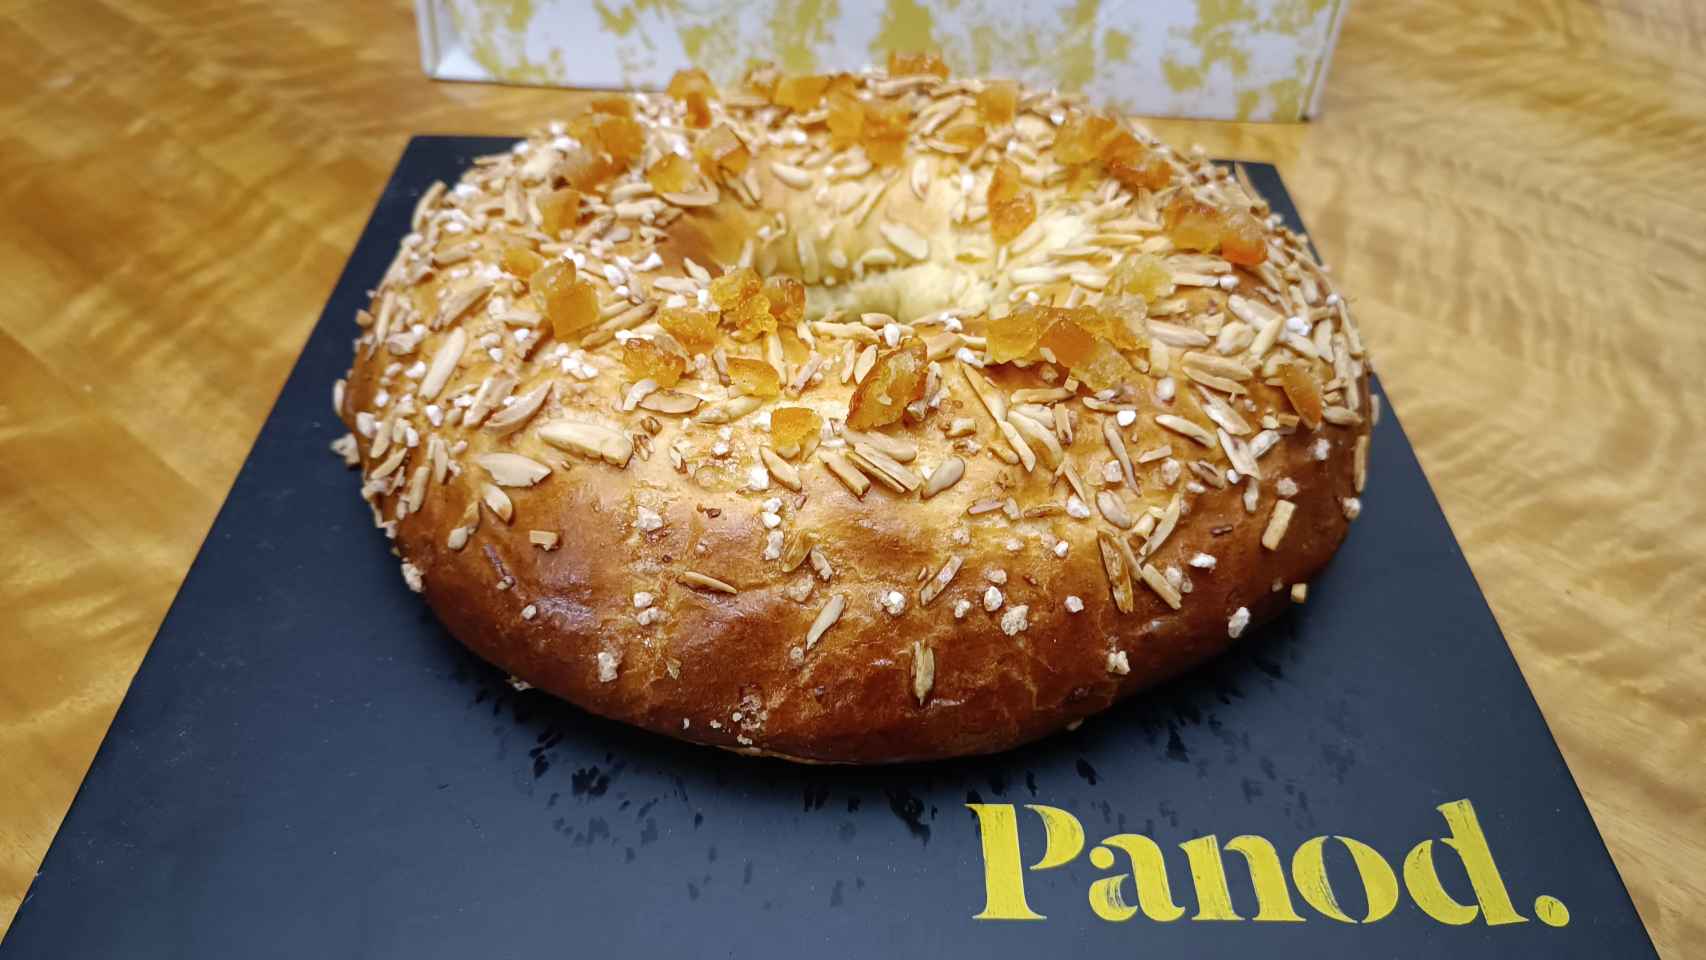 Panod, ganador del mejor roscón artesano de Madrid